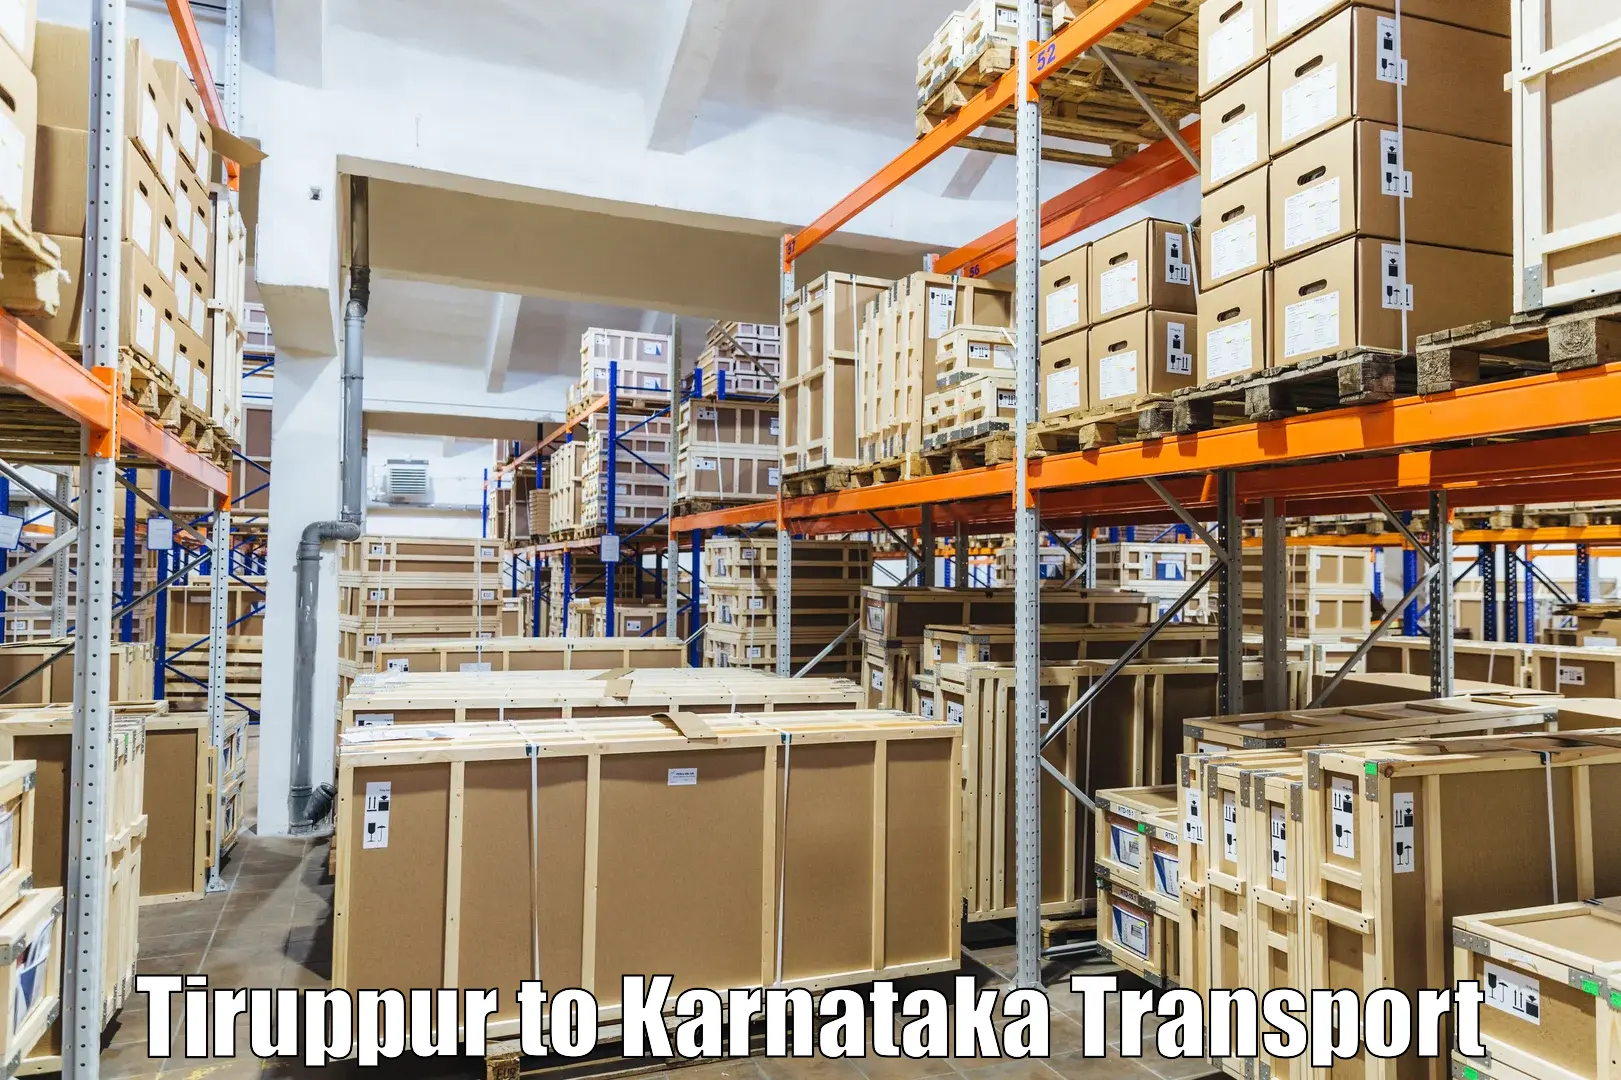 All India transport service Tiruppur to Srinivaspur